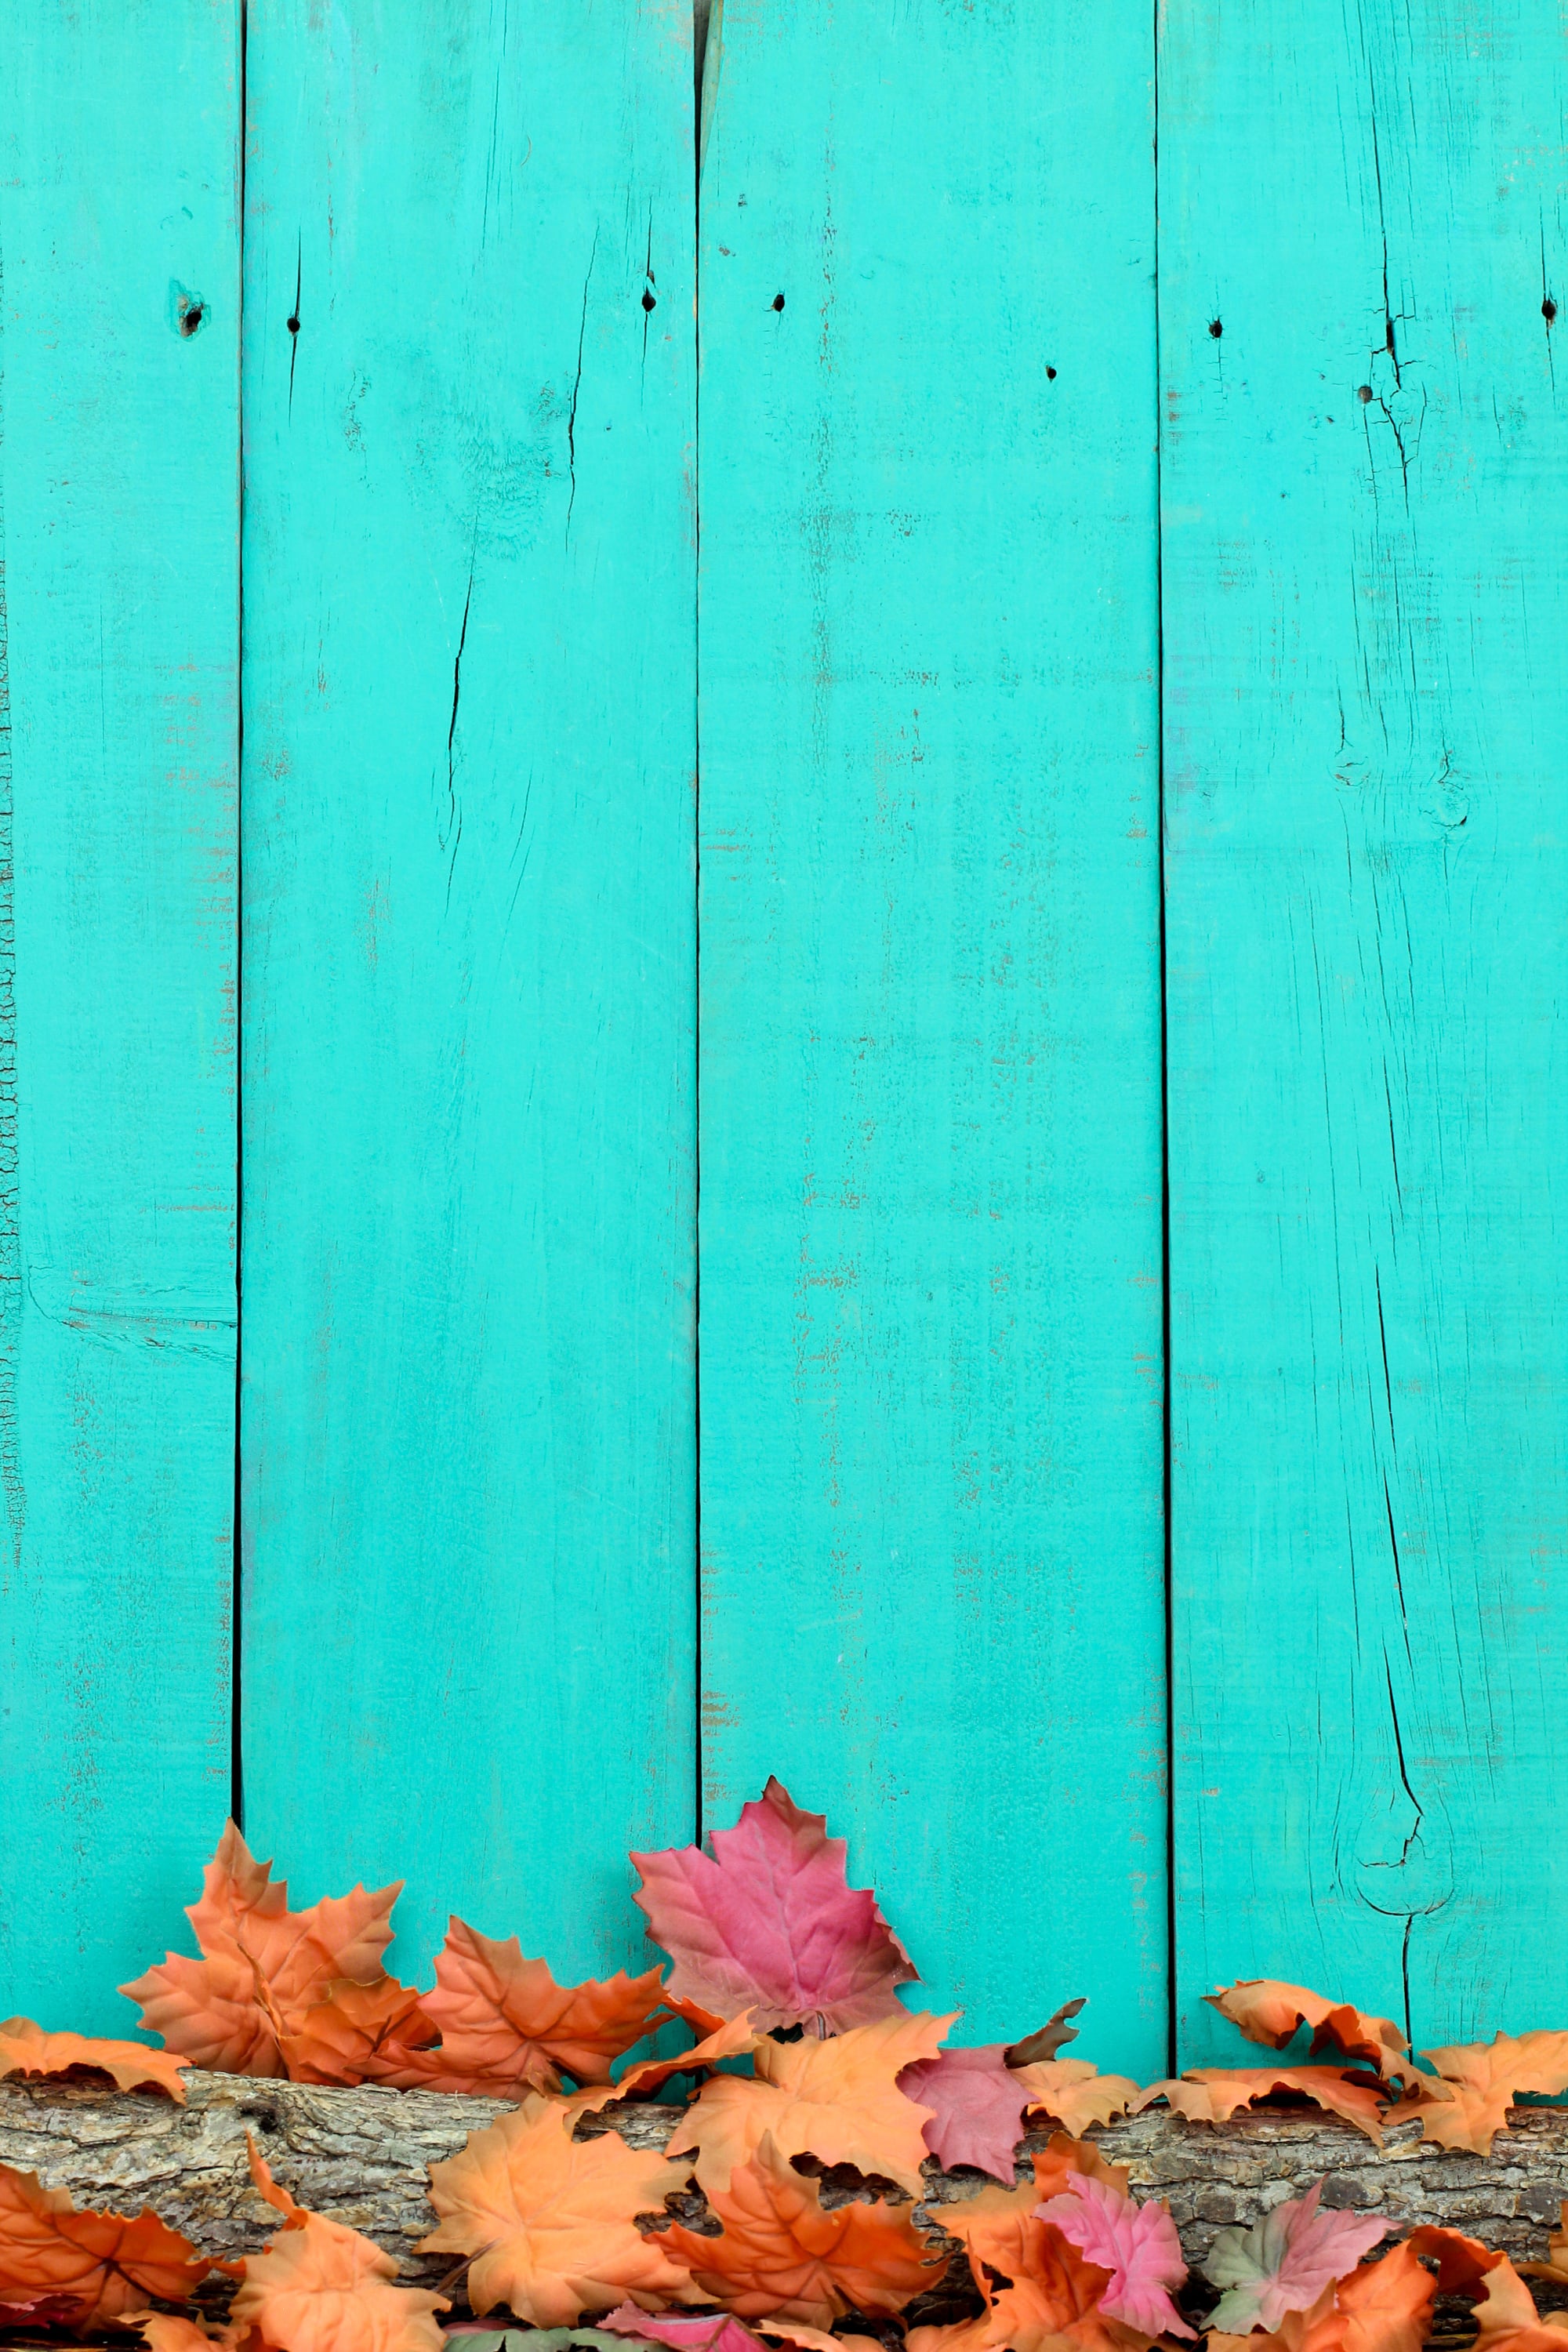 Mùa thu đến rồi, và bạn muốn trang trí điện thoại của mình với hình nền đậm chất mùa thu? Hãy lựa chọn hình nền Fall Background: Blue Wood and Leaves iPhone Wallpaper. Những chiếc lá đỏ, màu xanh trên nền gỗ lạnh lùng sẽ mang đến cho bạn sự ấm áp và cảm giác yên bình khi nhìn vào màn hình điện thoại.